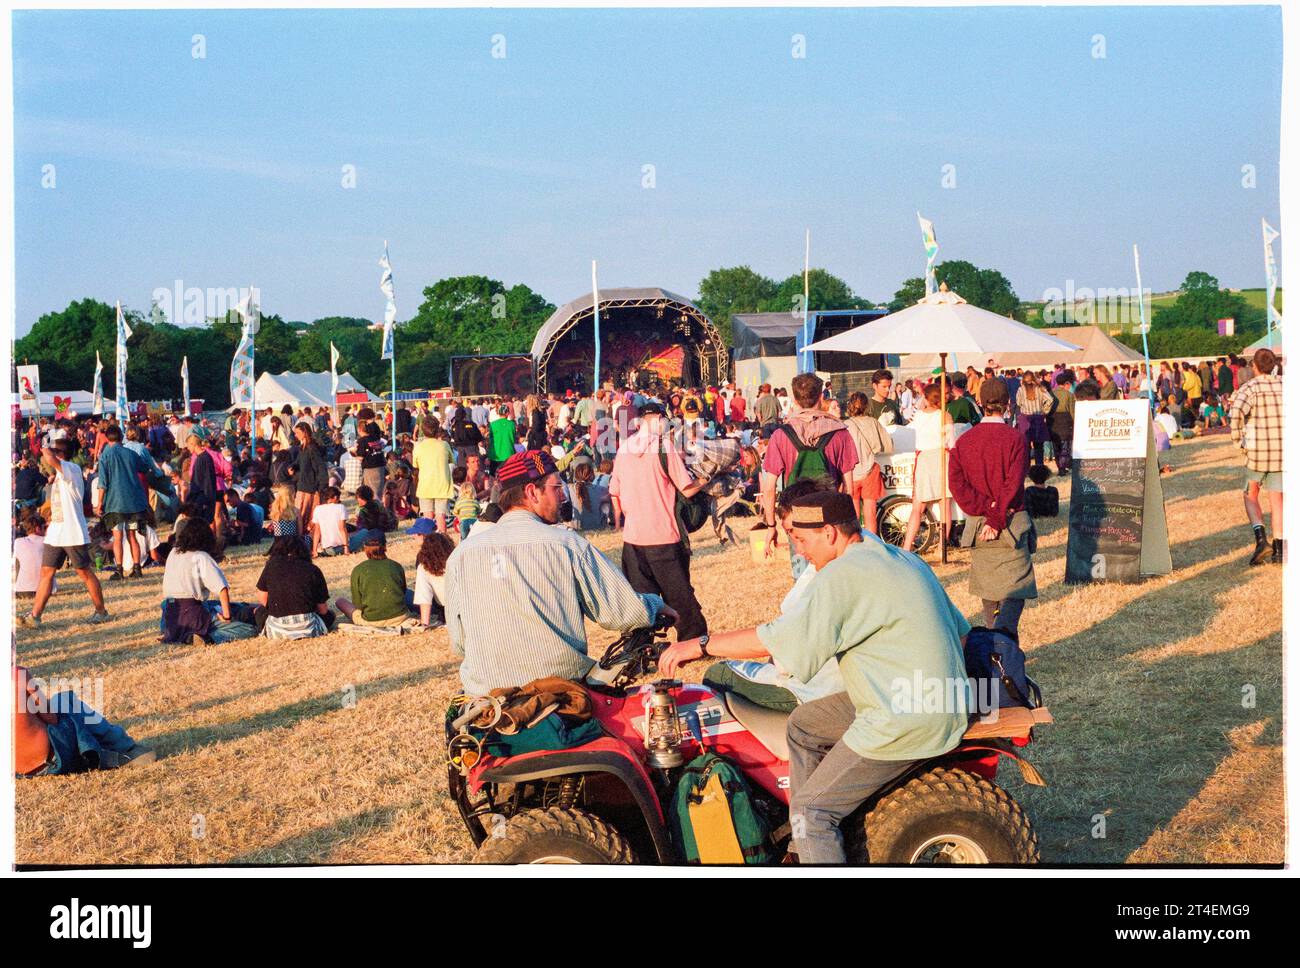 GLASTONBURY FESTIVAL, 1995: The Acoustic Stage at the top of the site at Glastonbury Festival, Pilton Farm, Somerset, Inghilterra, 24 giugno 1995. Nel 1995 il festival ha celebrato il suo 25° anniversario. Non c'era nessuna fase piramidale quell'anno, dato che era bruciata. Foto: ROB WATKINS Foto Stock